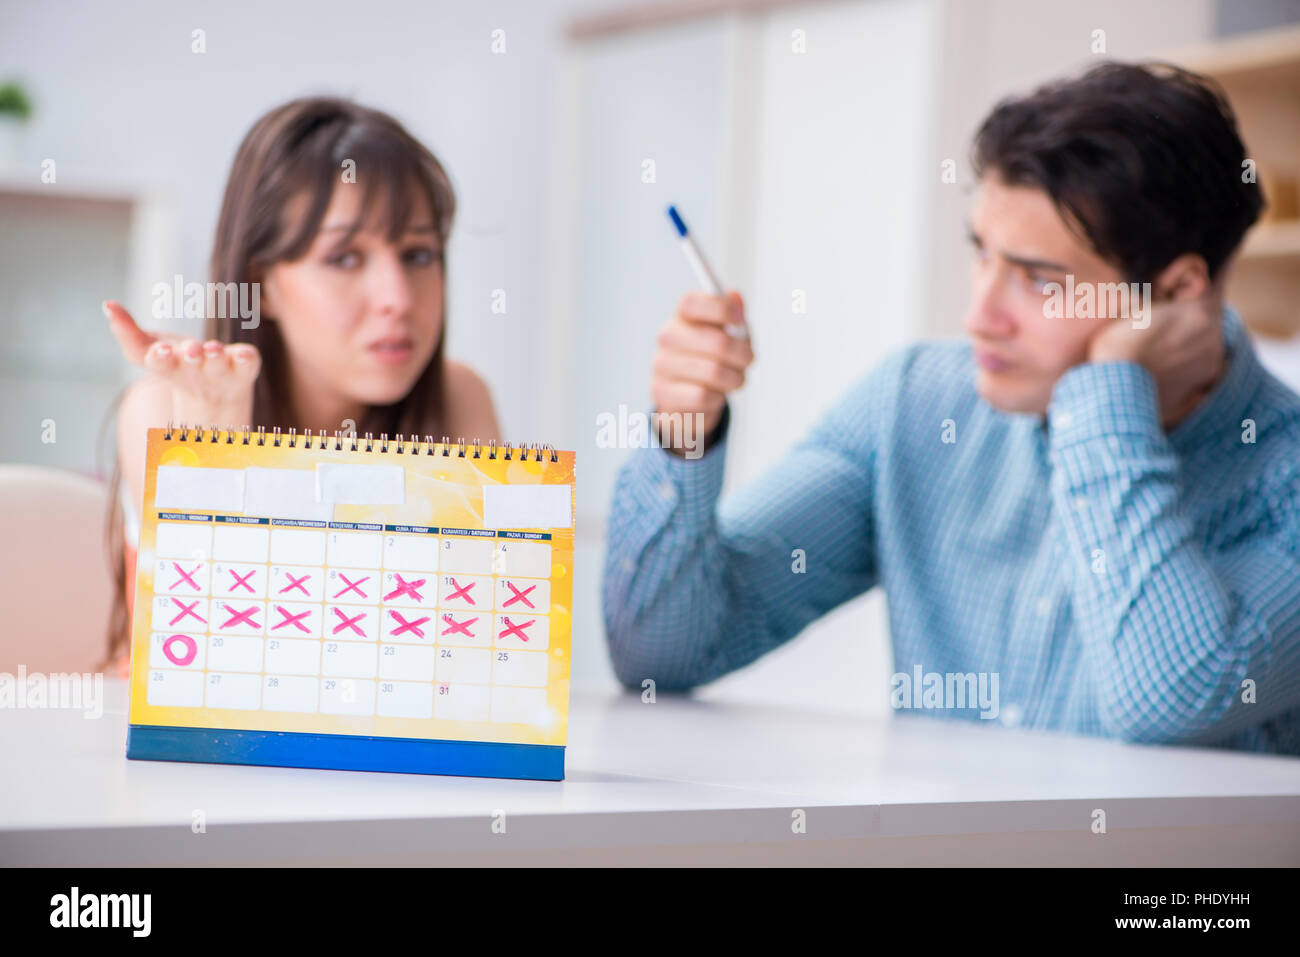 Junge Familie in der Schwangerschaft Planung Konzept mit dem Eisprung Kalender Stockfoto